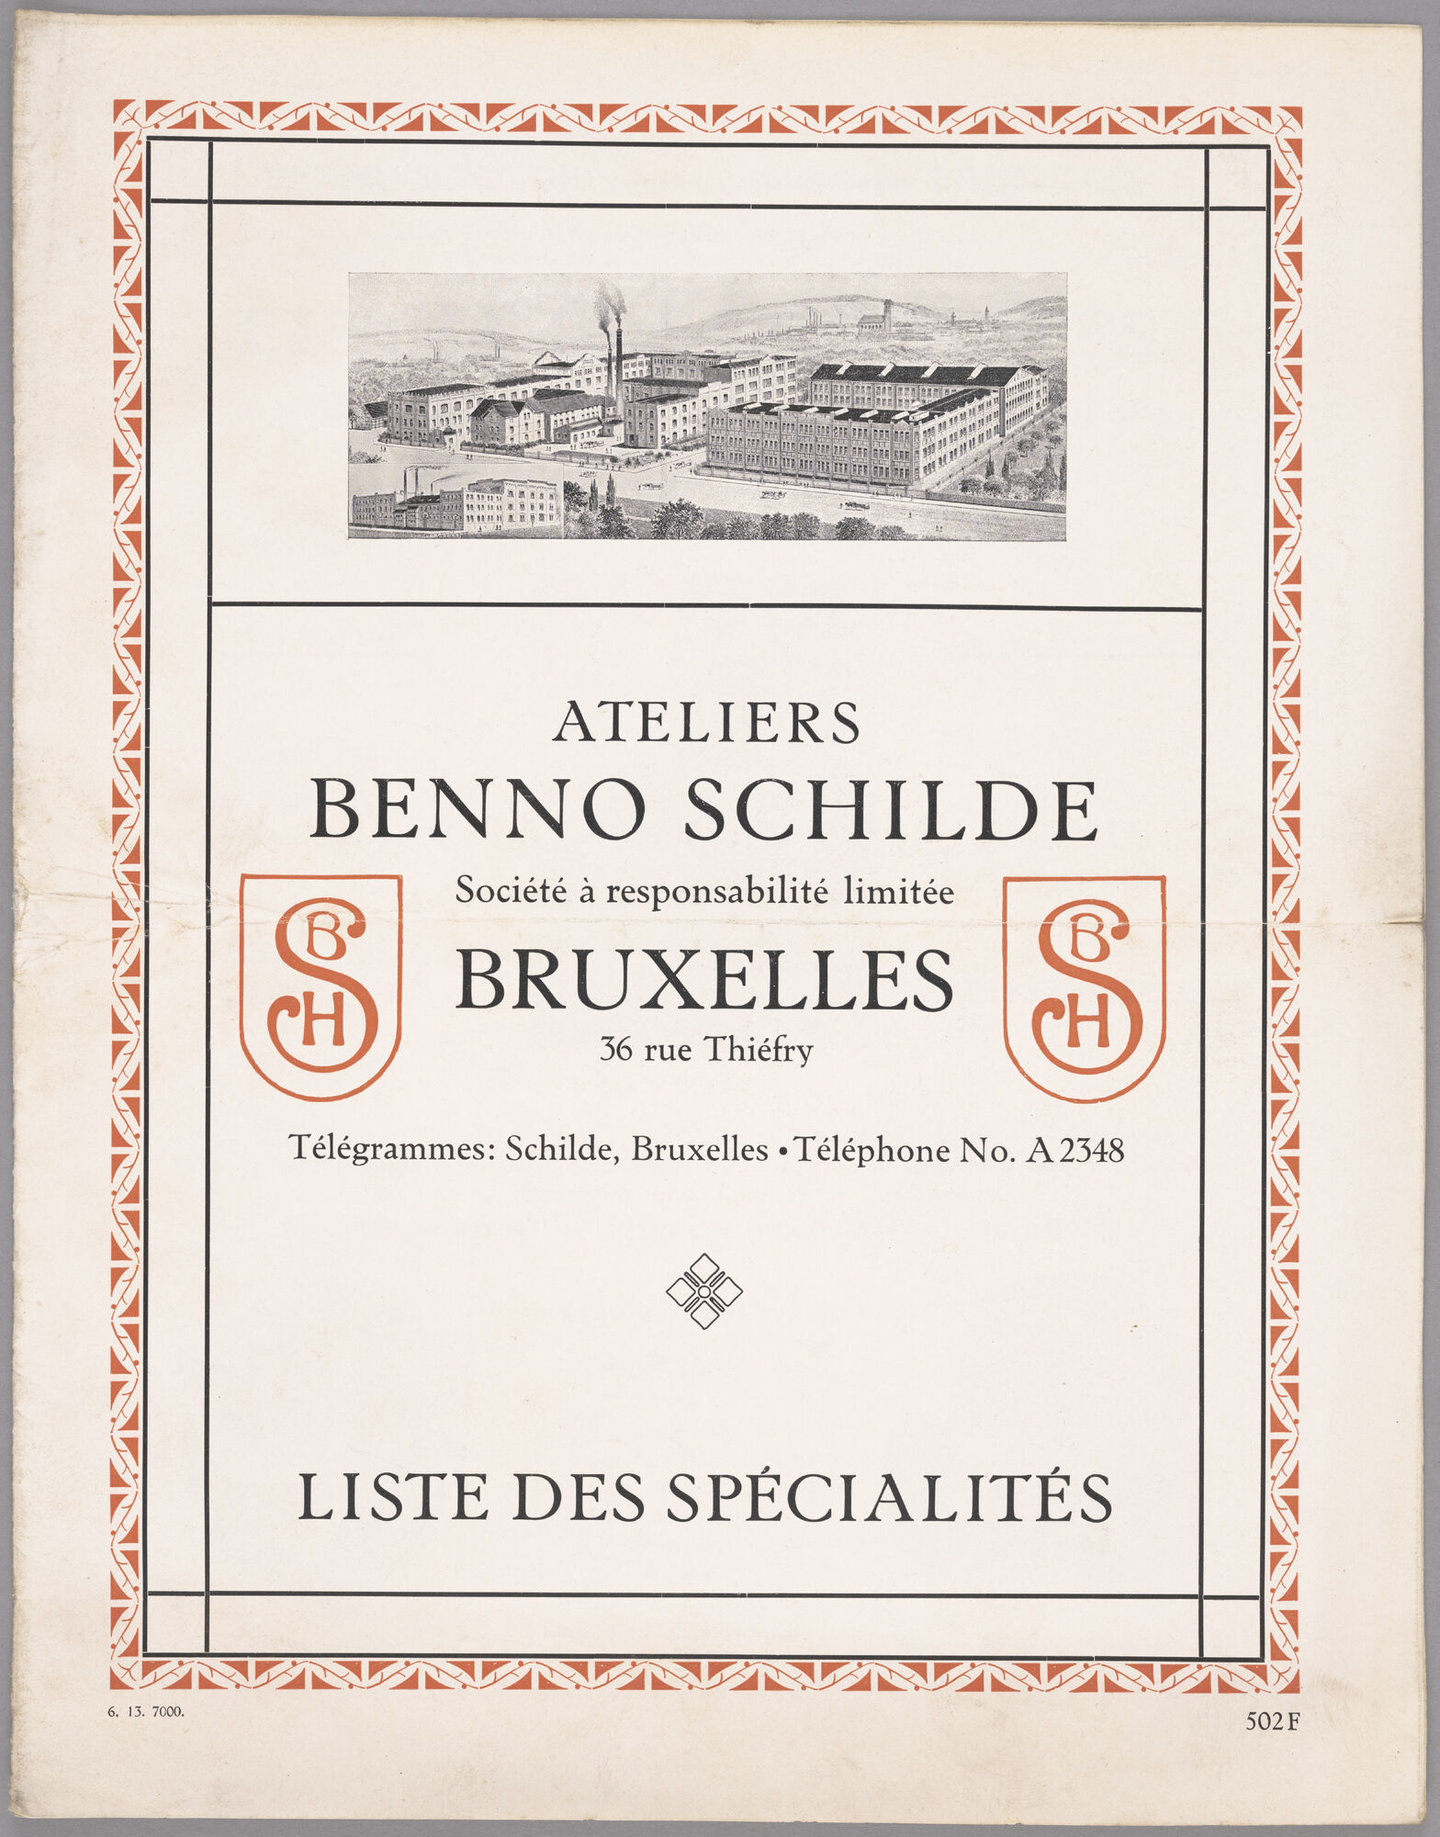 Productbrochure van metaalconstructiebedrijf Benno Schilde in Brussel